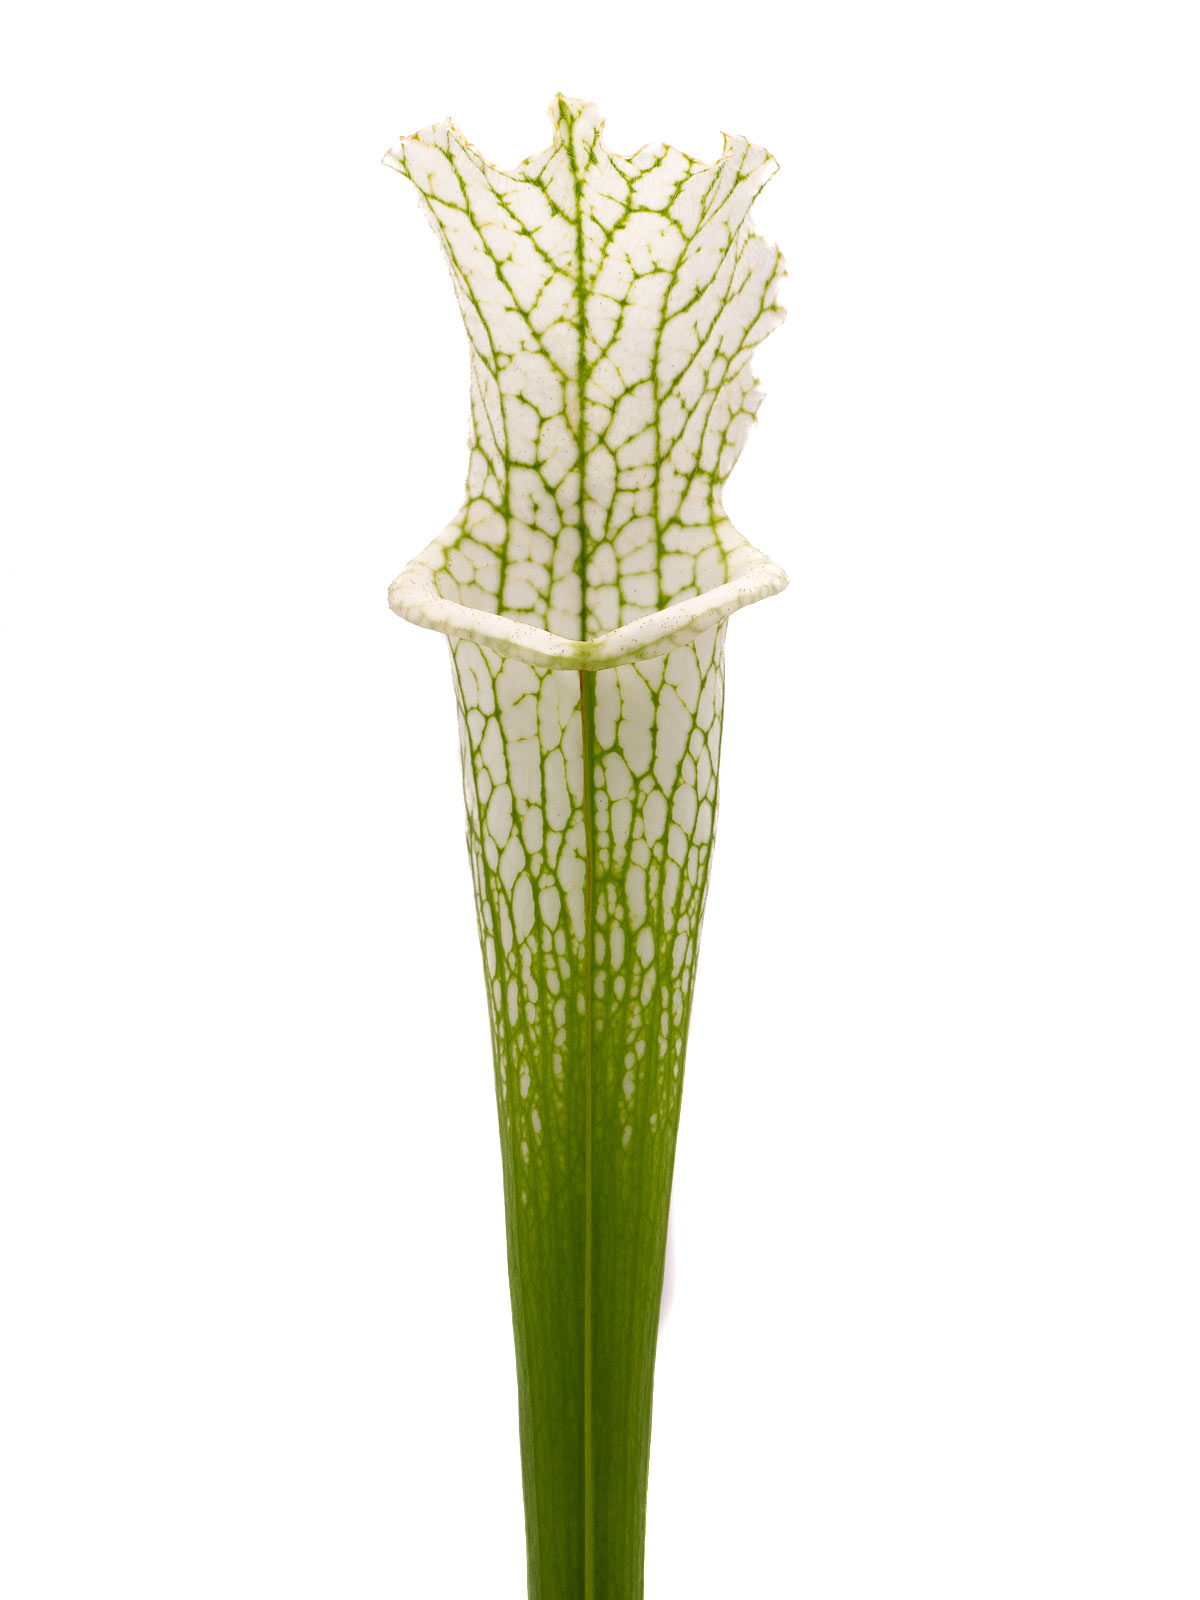 Sarracenia leucophylla var. alba - `white top´, Christian Klein